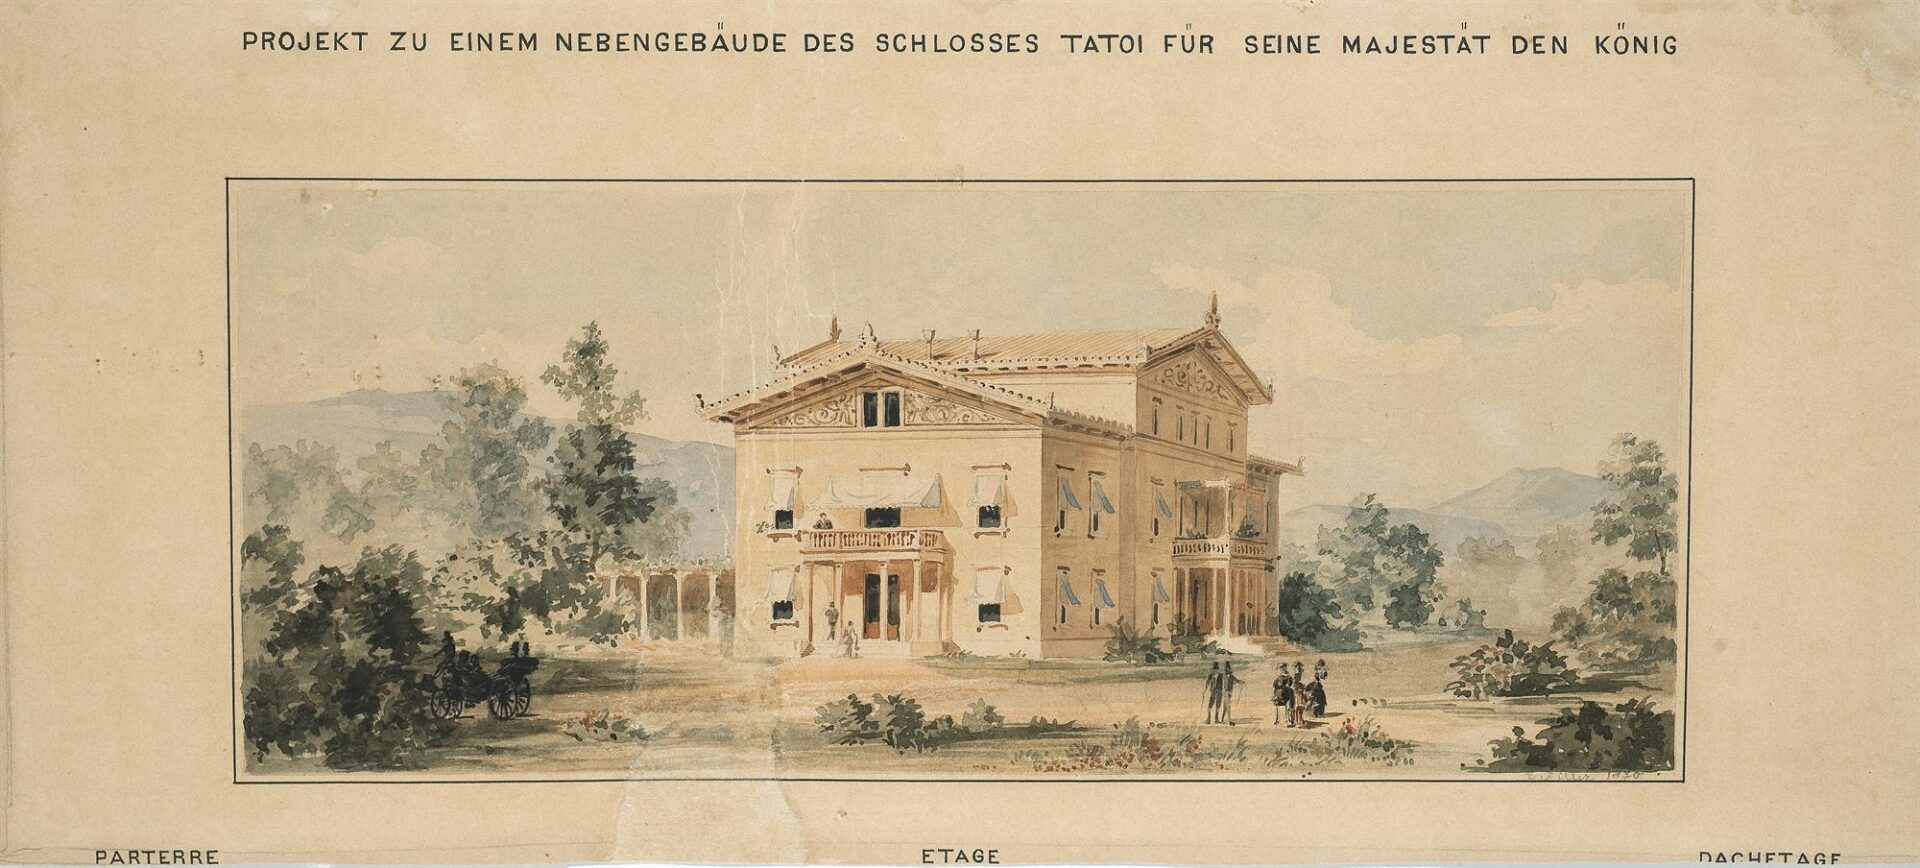 Πρόταση για ένα παράρτημα κτηρίου του ανακτόρου στο Τατόι σε “ελληνοελβετικό ύφος” - Ziller Ernst